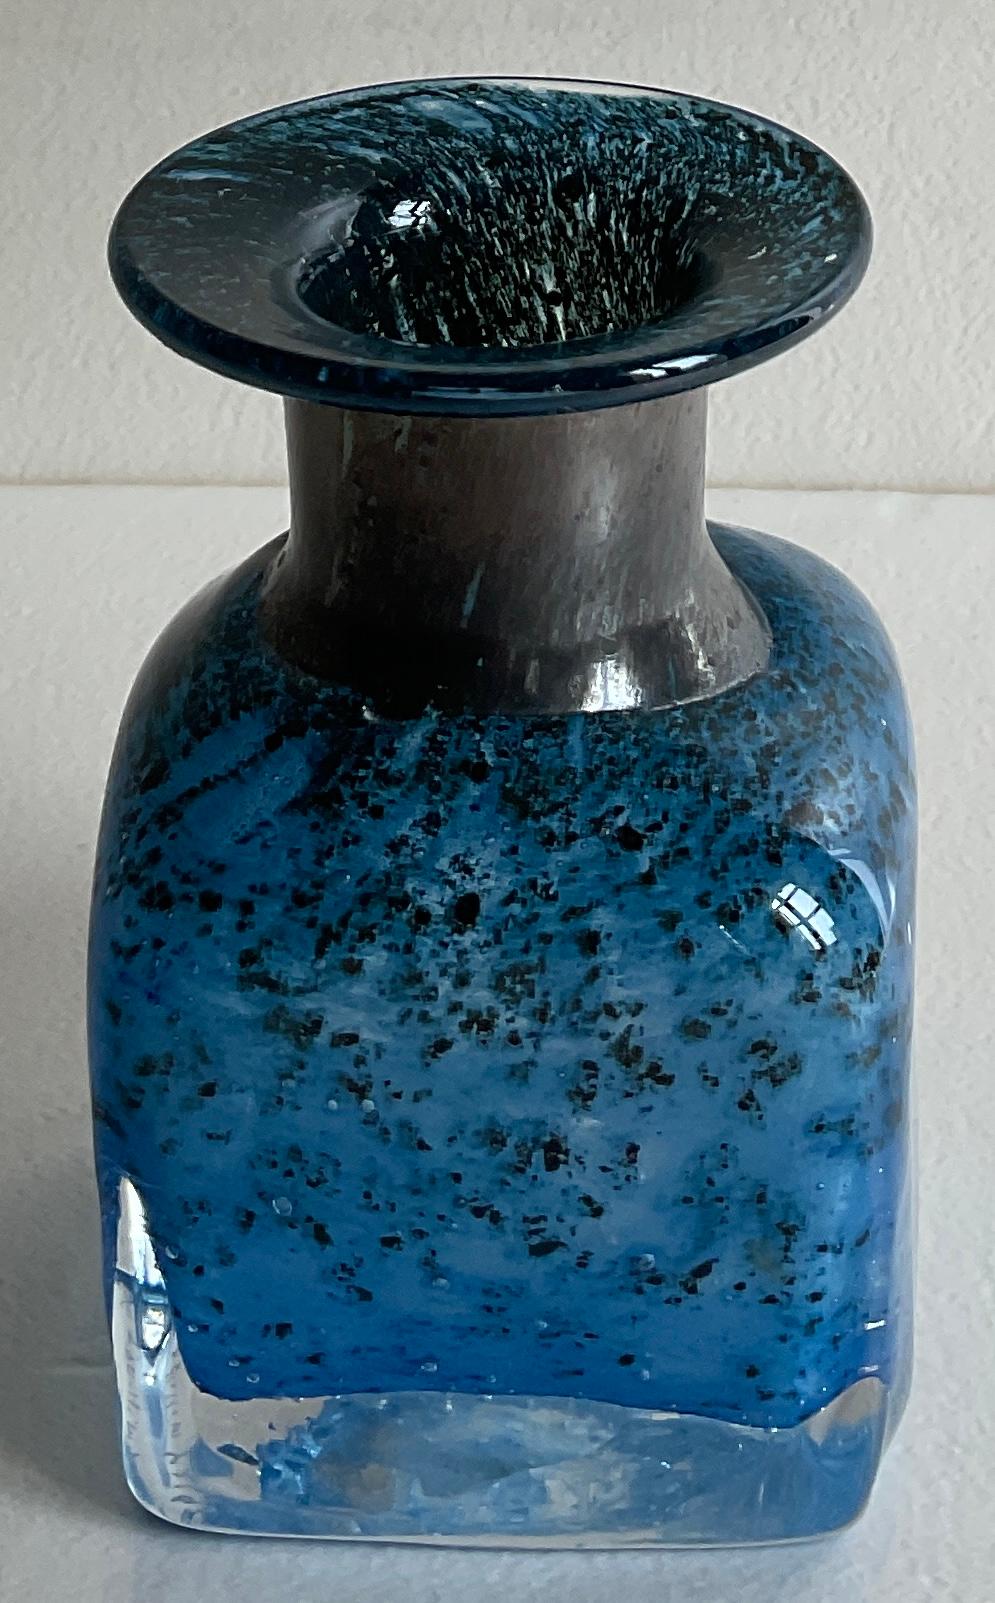 Un joli vase à tige en verre d'art Murano. 
Aucun dommage, inclusions de bulles contrôlées et technique sommerso. 
Fabriqué entièrement à la main.

Signé sur la base et numéroté.

Mesures : 2 3/4